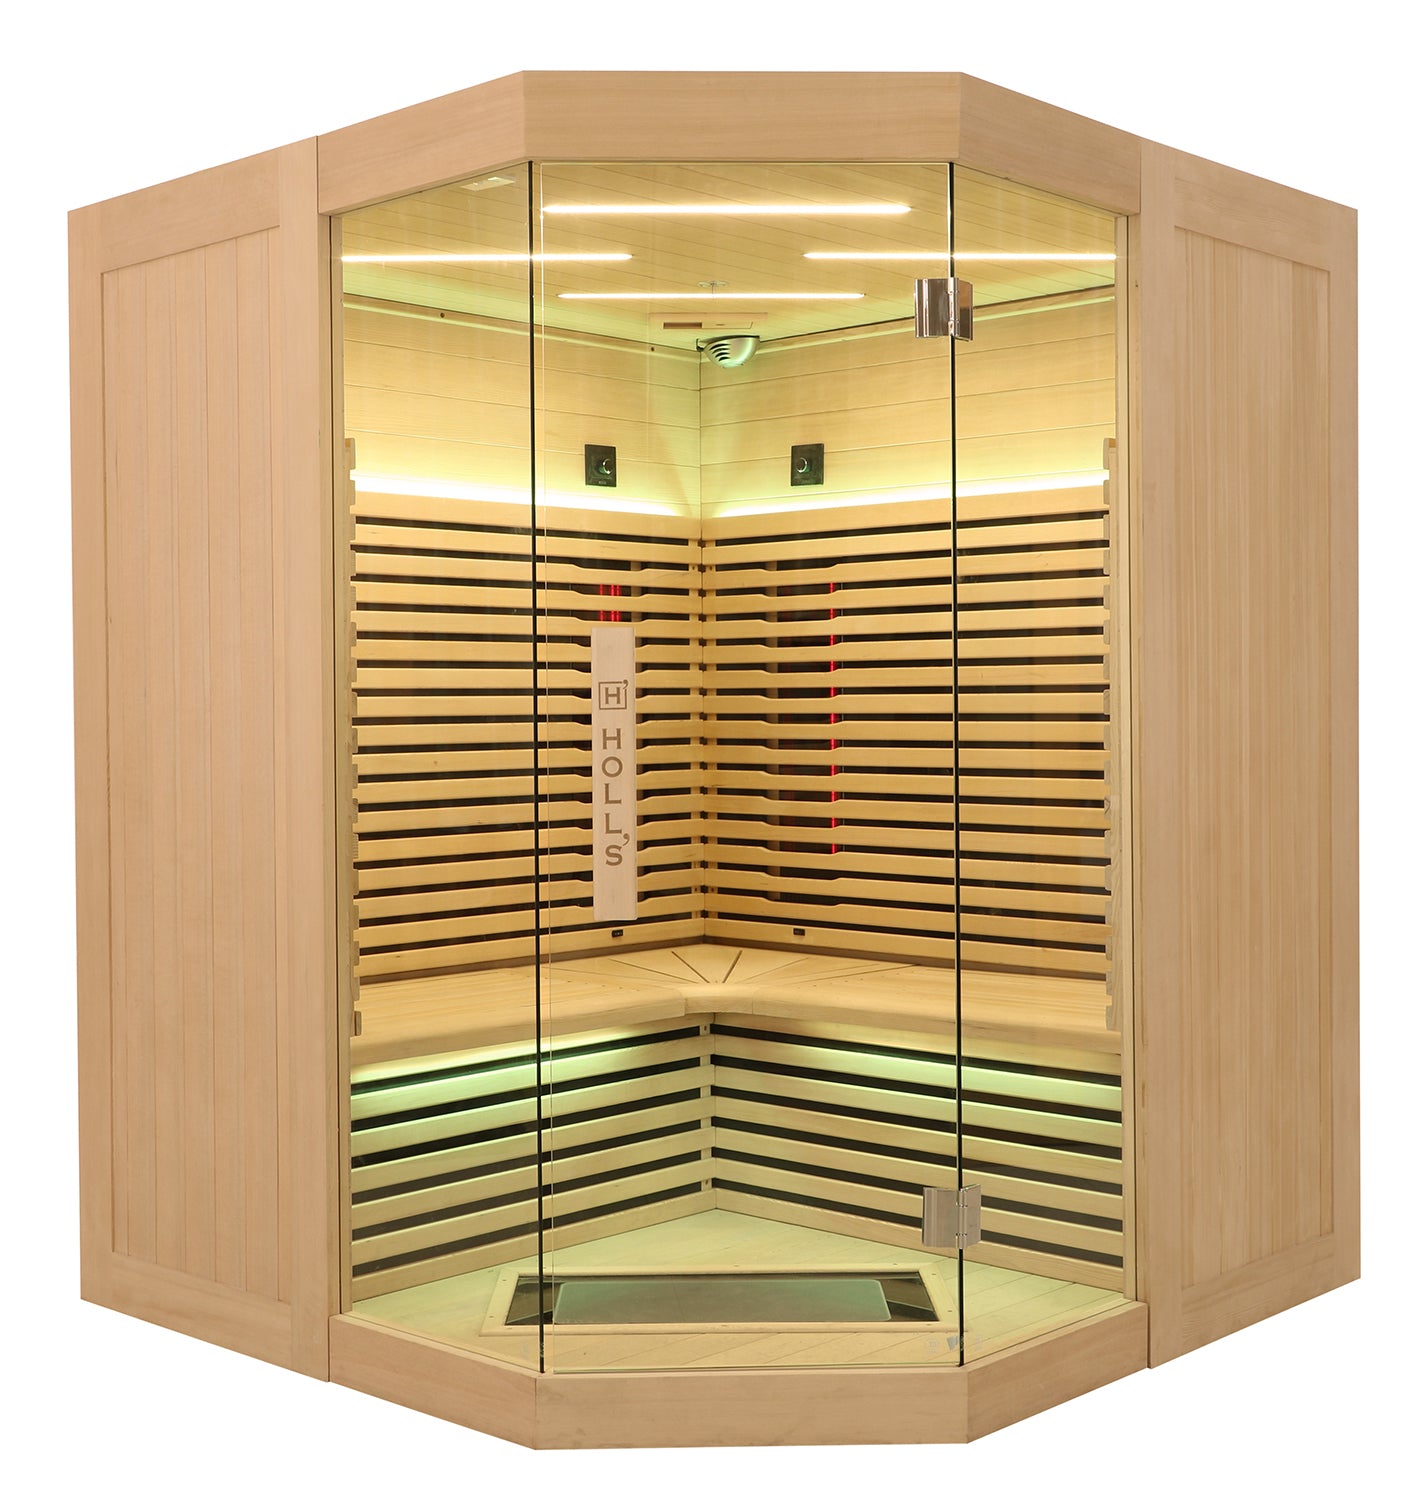 Infracrvena sauna Canopee 3 (3/4 osobe) kutna